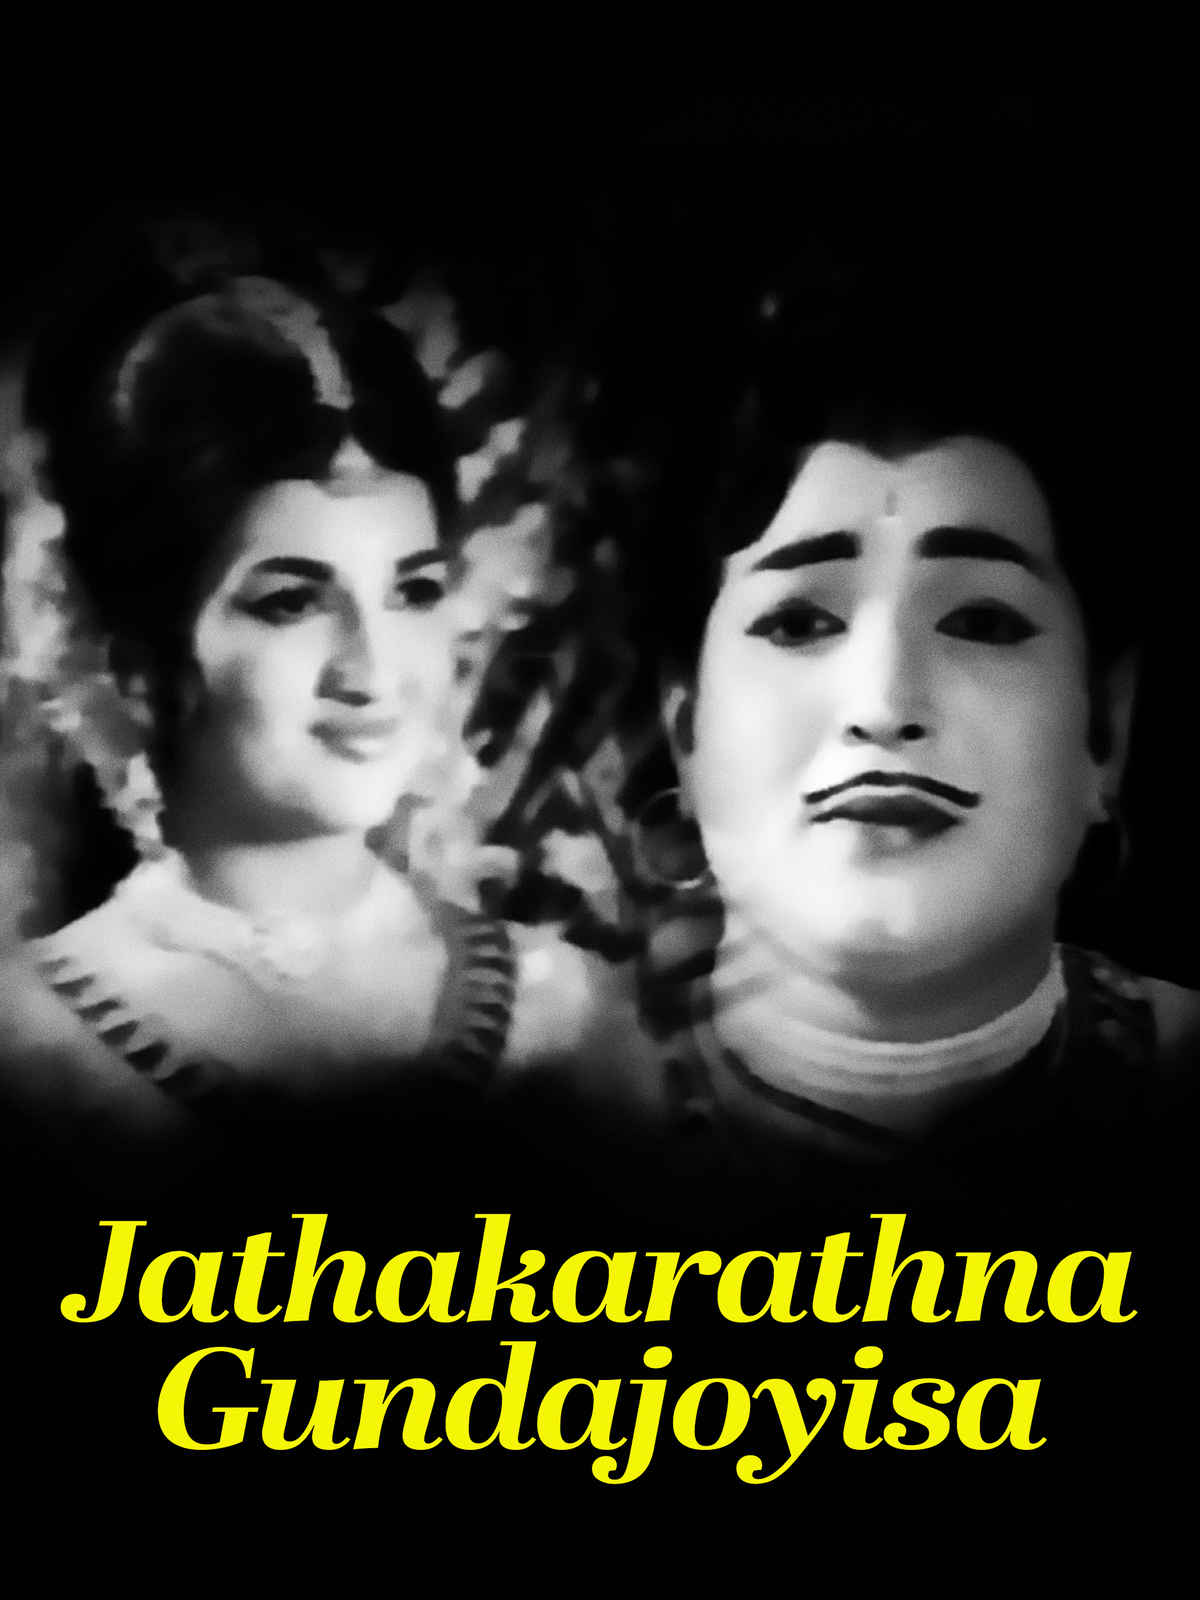 Jathakarathna Gundajoyisa